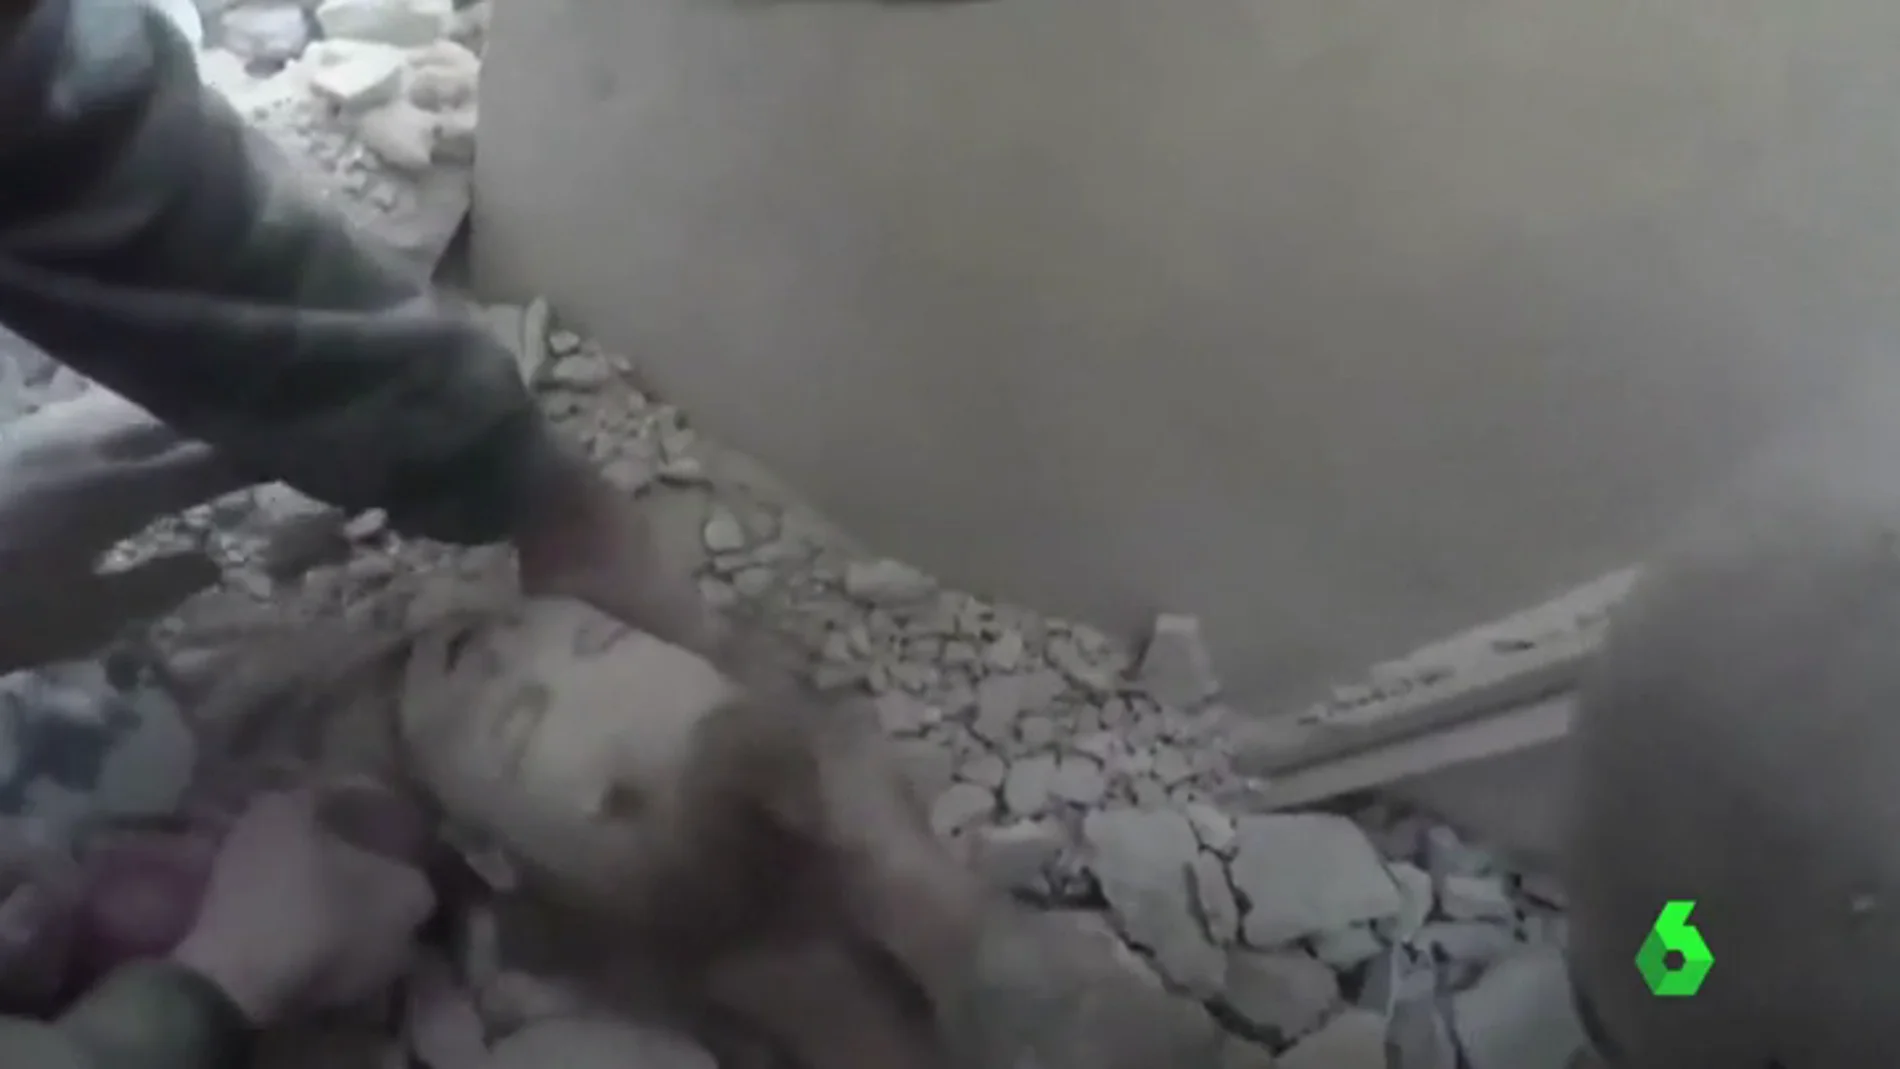 Rescate de una bebé en Siria